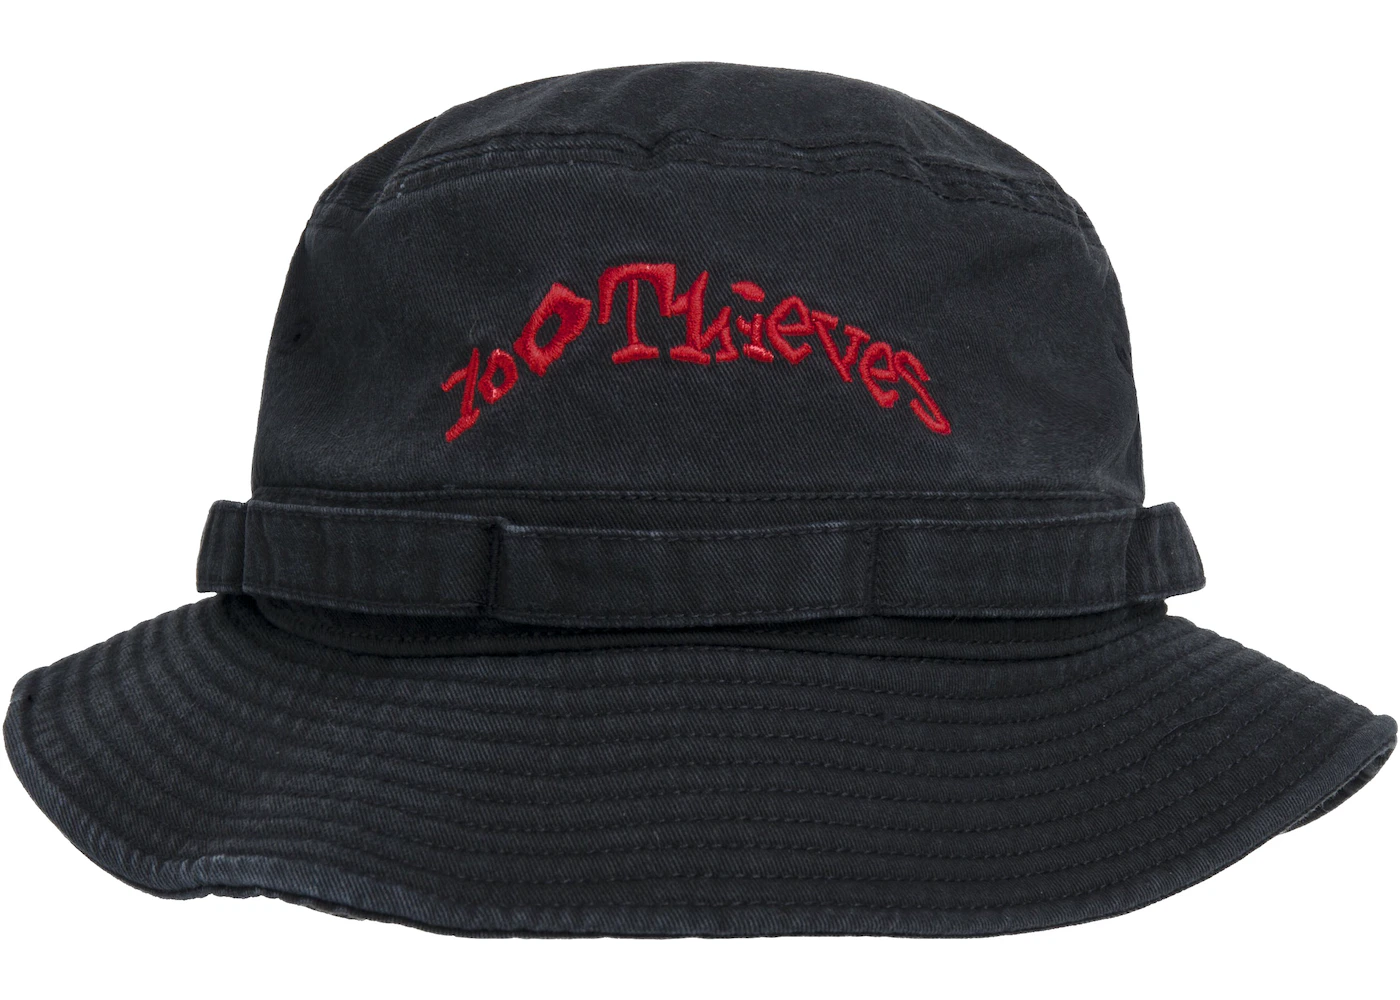 100 Thieves Underworld Bucket Hat Black - SS21 - US